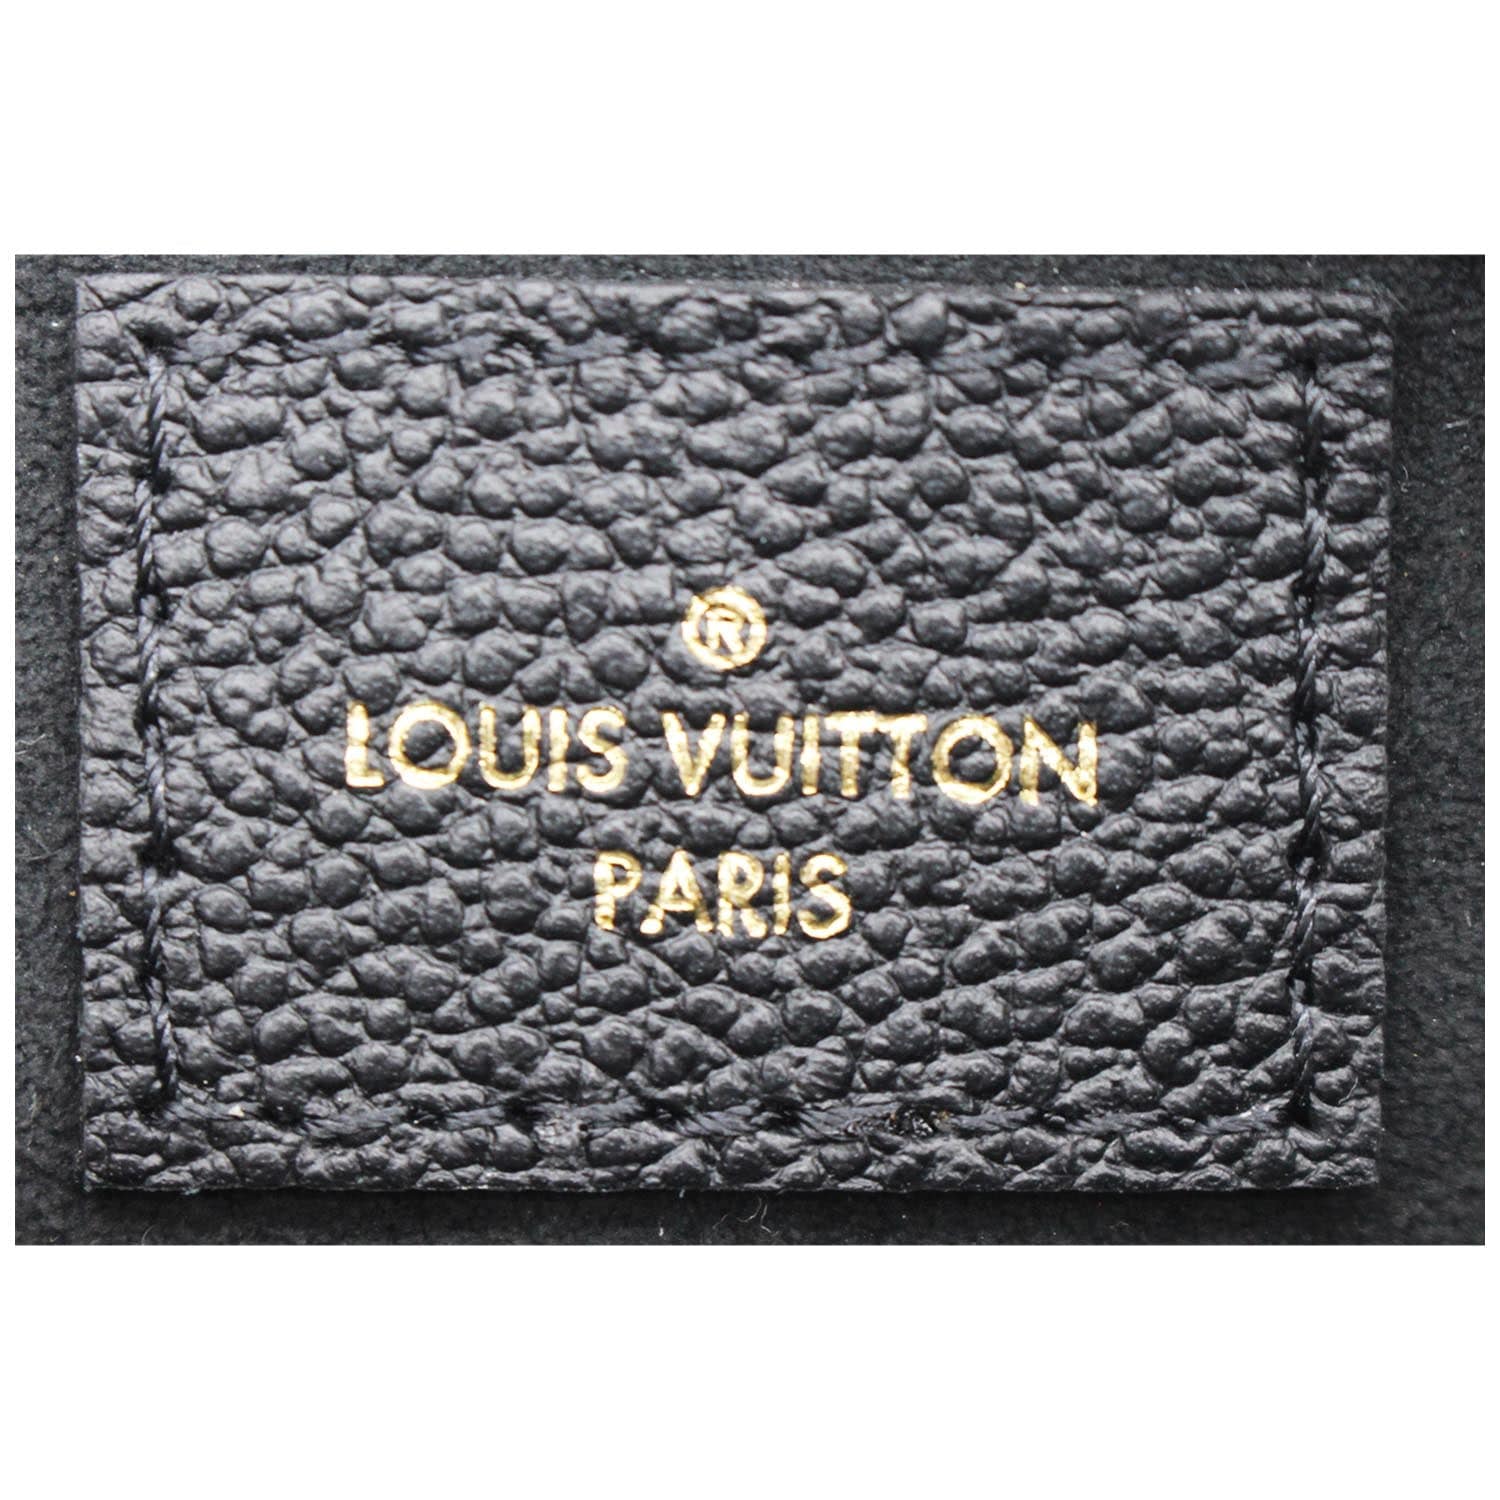 Louis Vuitton MULTI-POCHETTE EMPREINTE LEATHER BIOCOLOUR, CREAM AND BLACK  NEW 2021 #lvmultipochette 